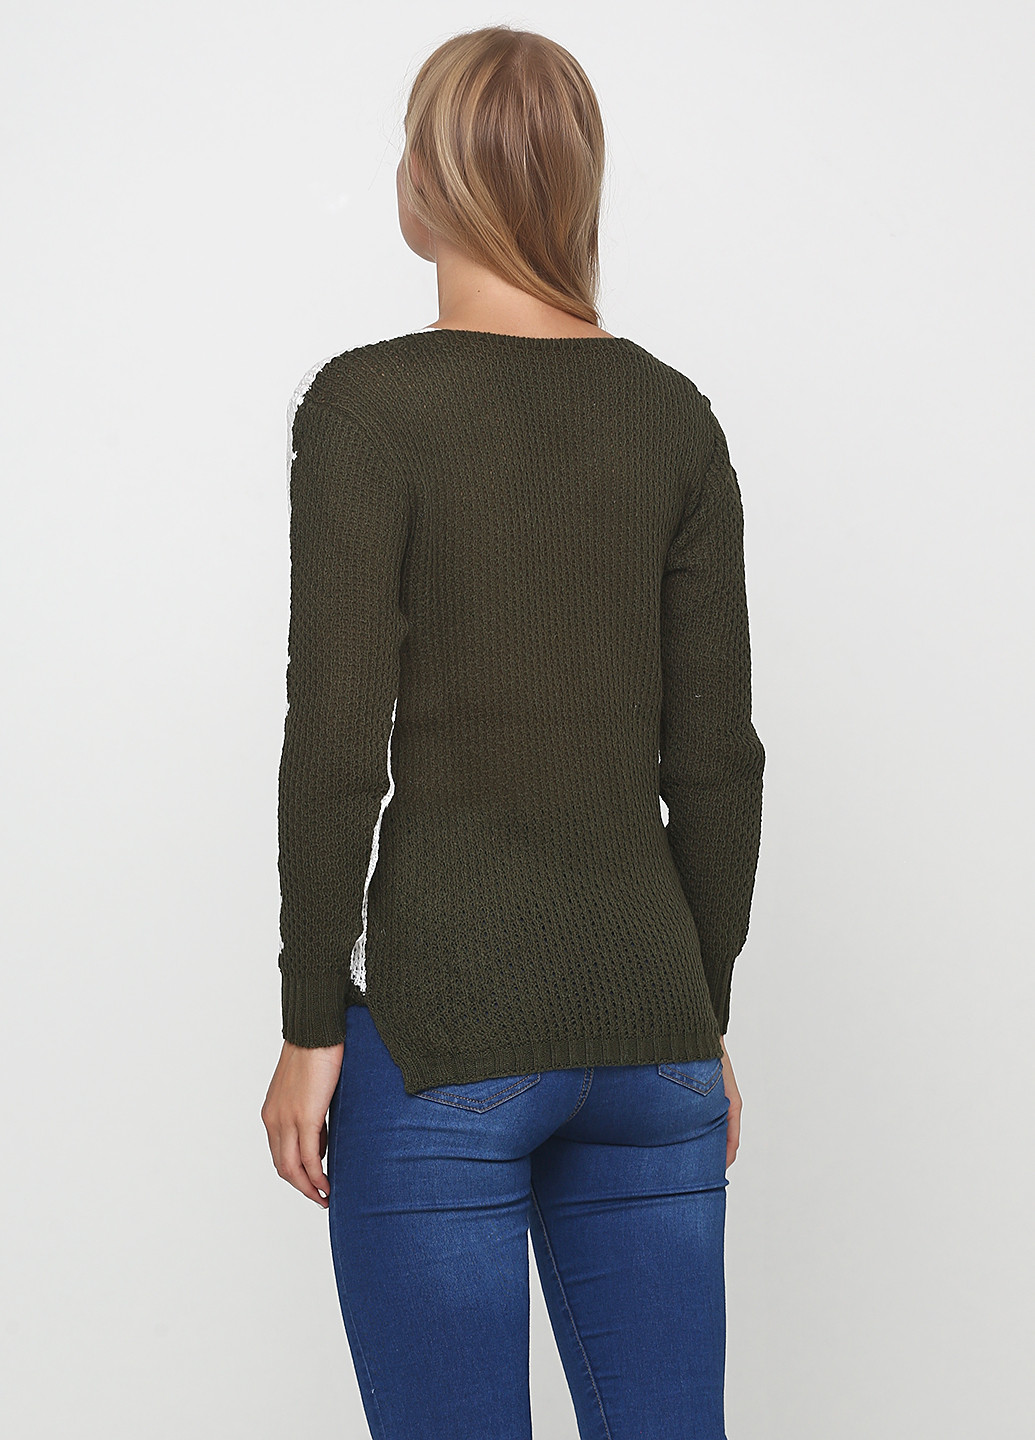 Оливковый (хаки) демисезонный пуловер пуловер Massimo